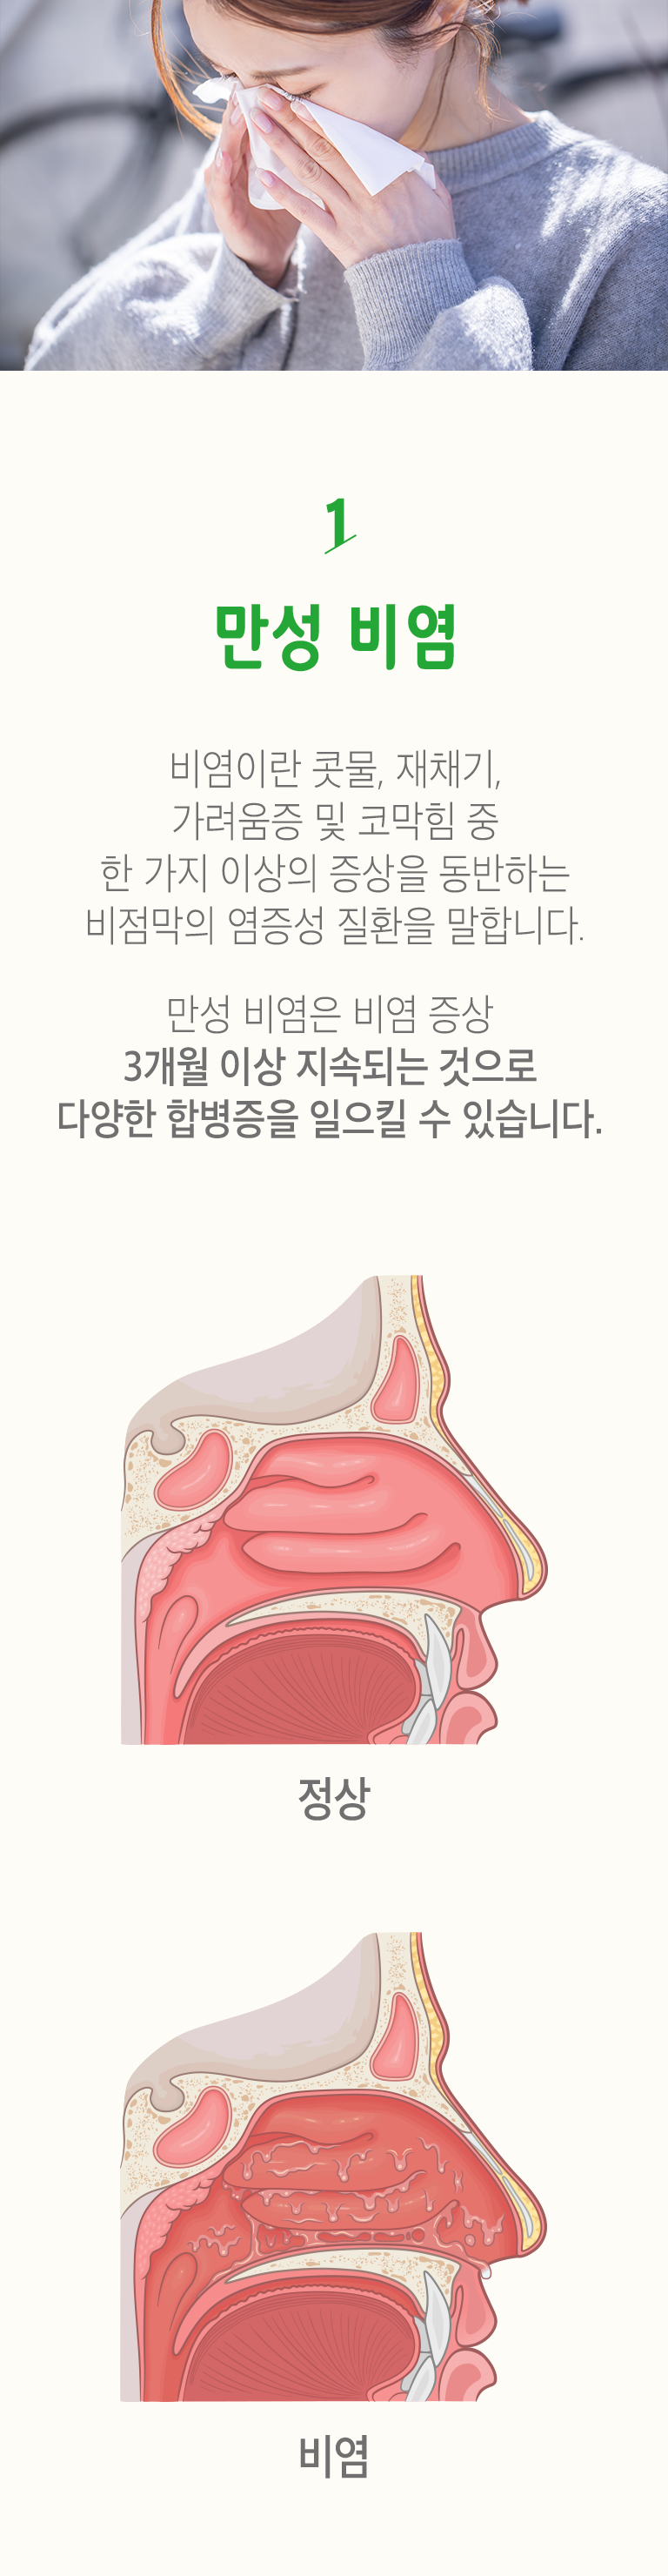 01 만성 비염 ▷ 비염이란 콧물, 재채기, 가려움증 및 코막힘 중 한 가지 이상의 증상을 동반하는 비점막의 염증성 질환을 말합니다. 만성 비염은 비염 증상 3개월 이상 지속되는 것으로 다양한 합병증을 일으킬 수 있습니다. 